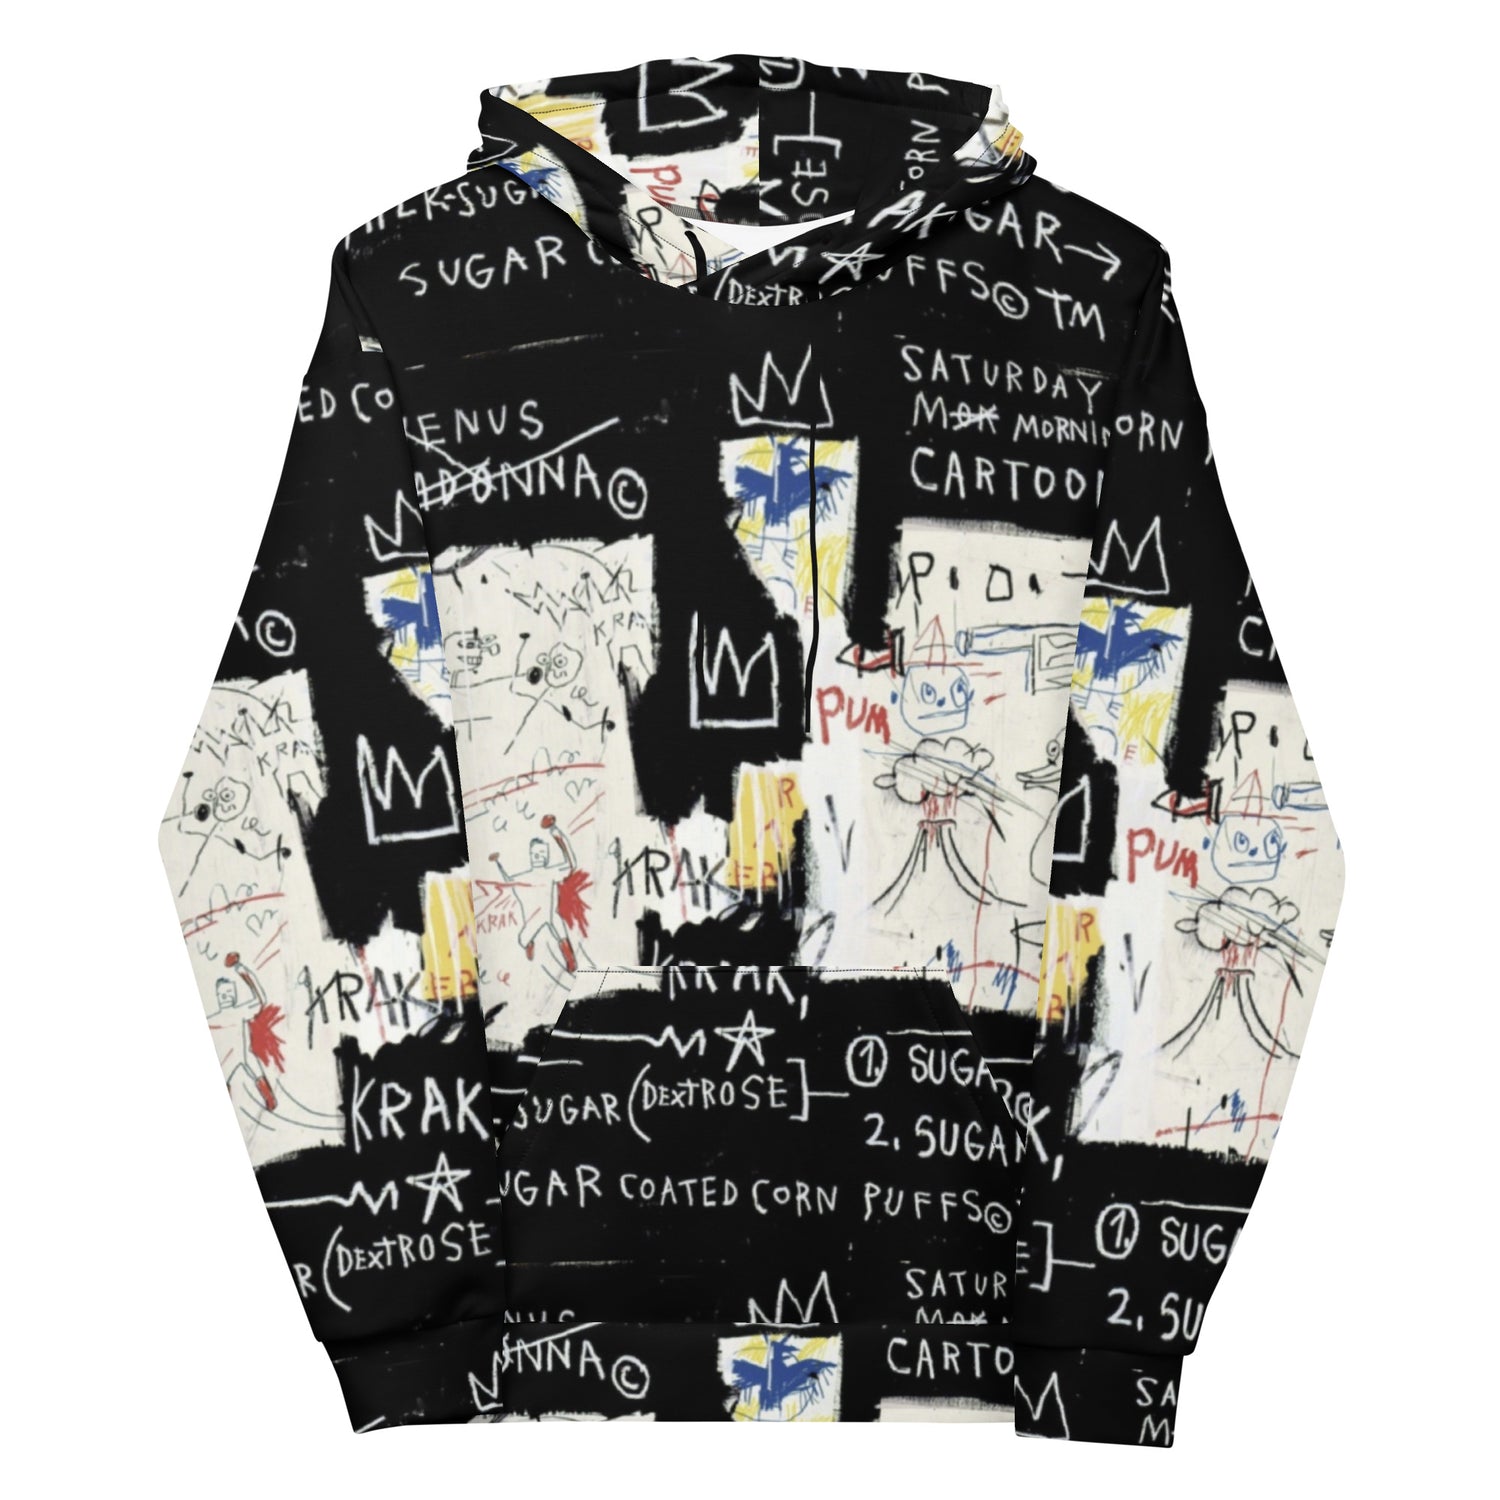 Jean-Michel Basquiat "A Panel of Experts" Artwork Printed Premium Streetwear Sweatshirt Hoodie Harajuku Graffiti